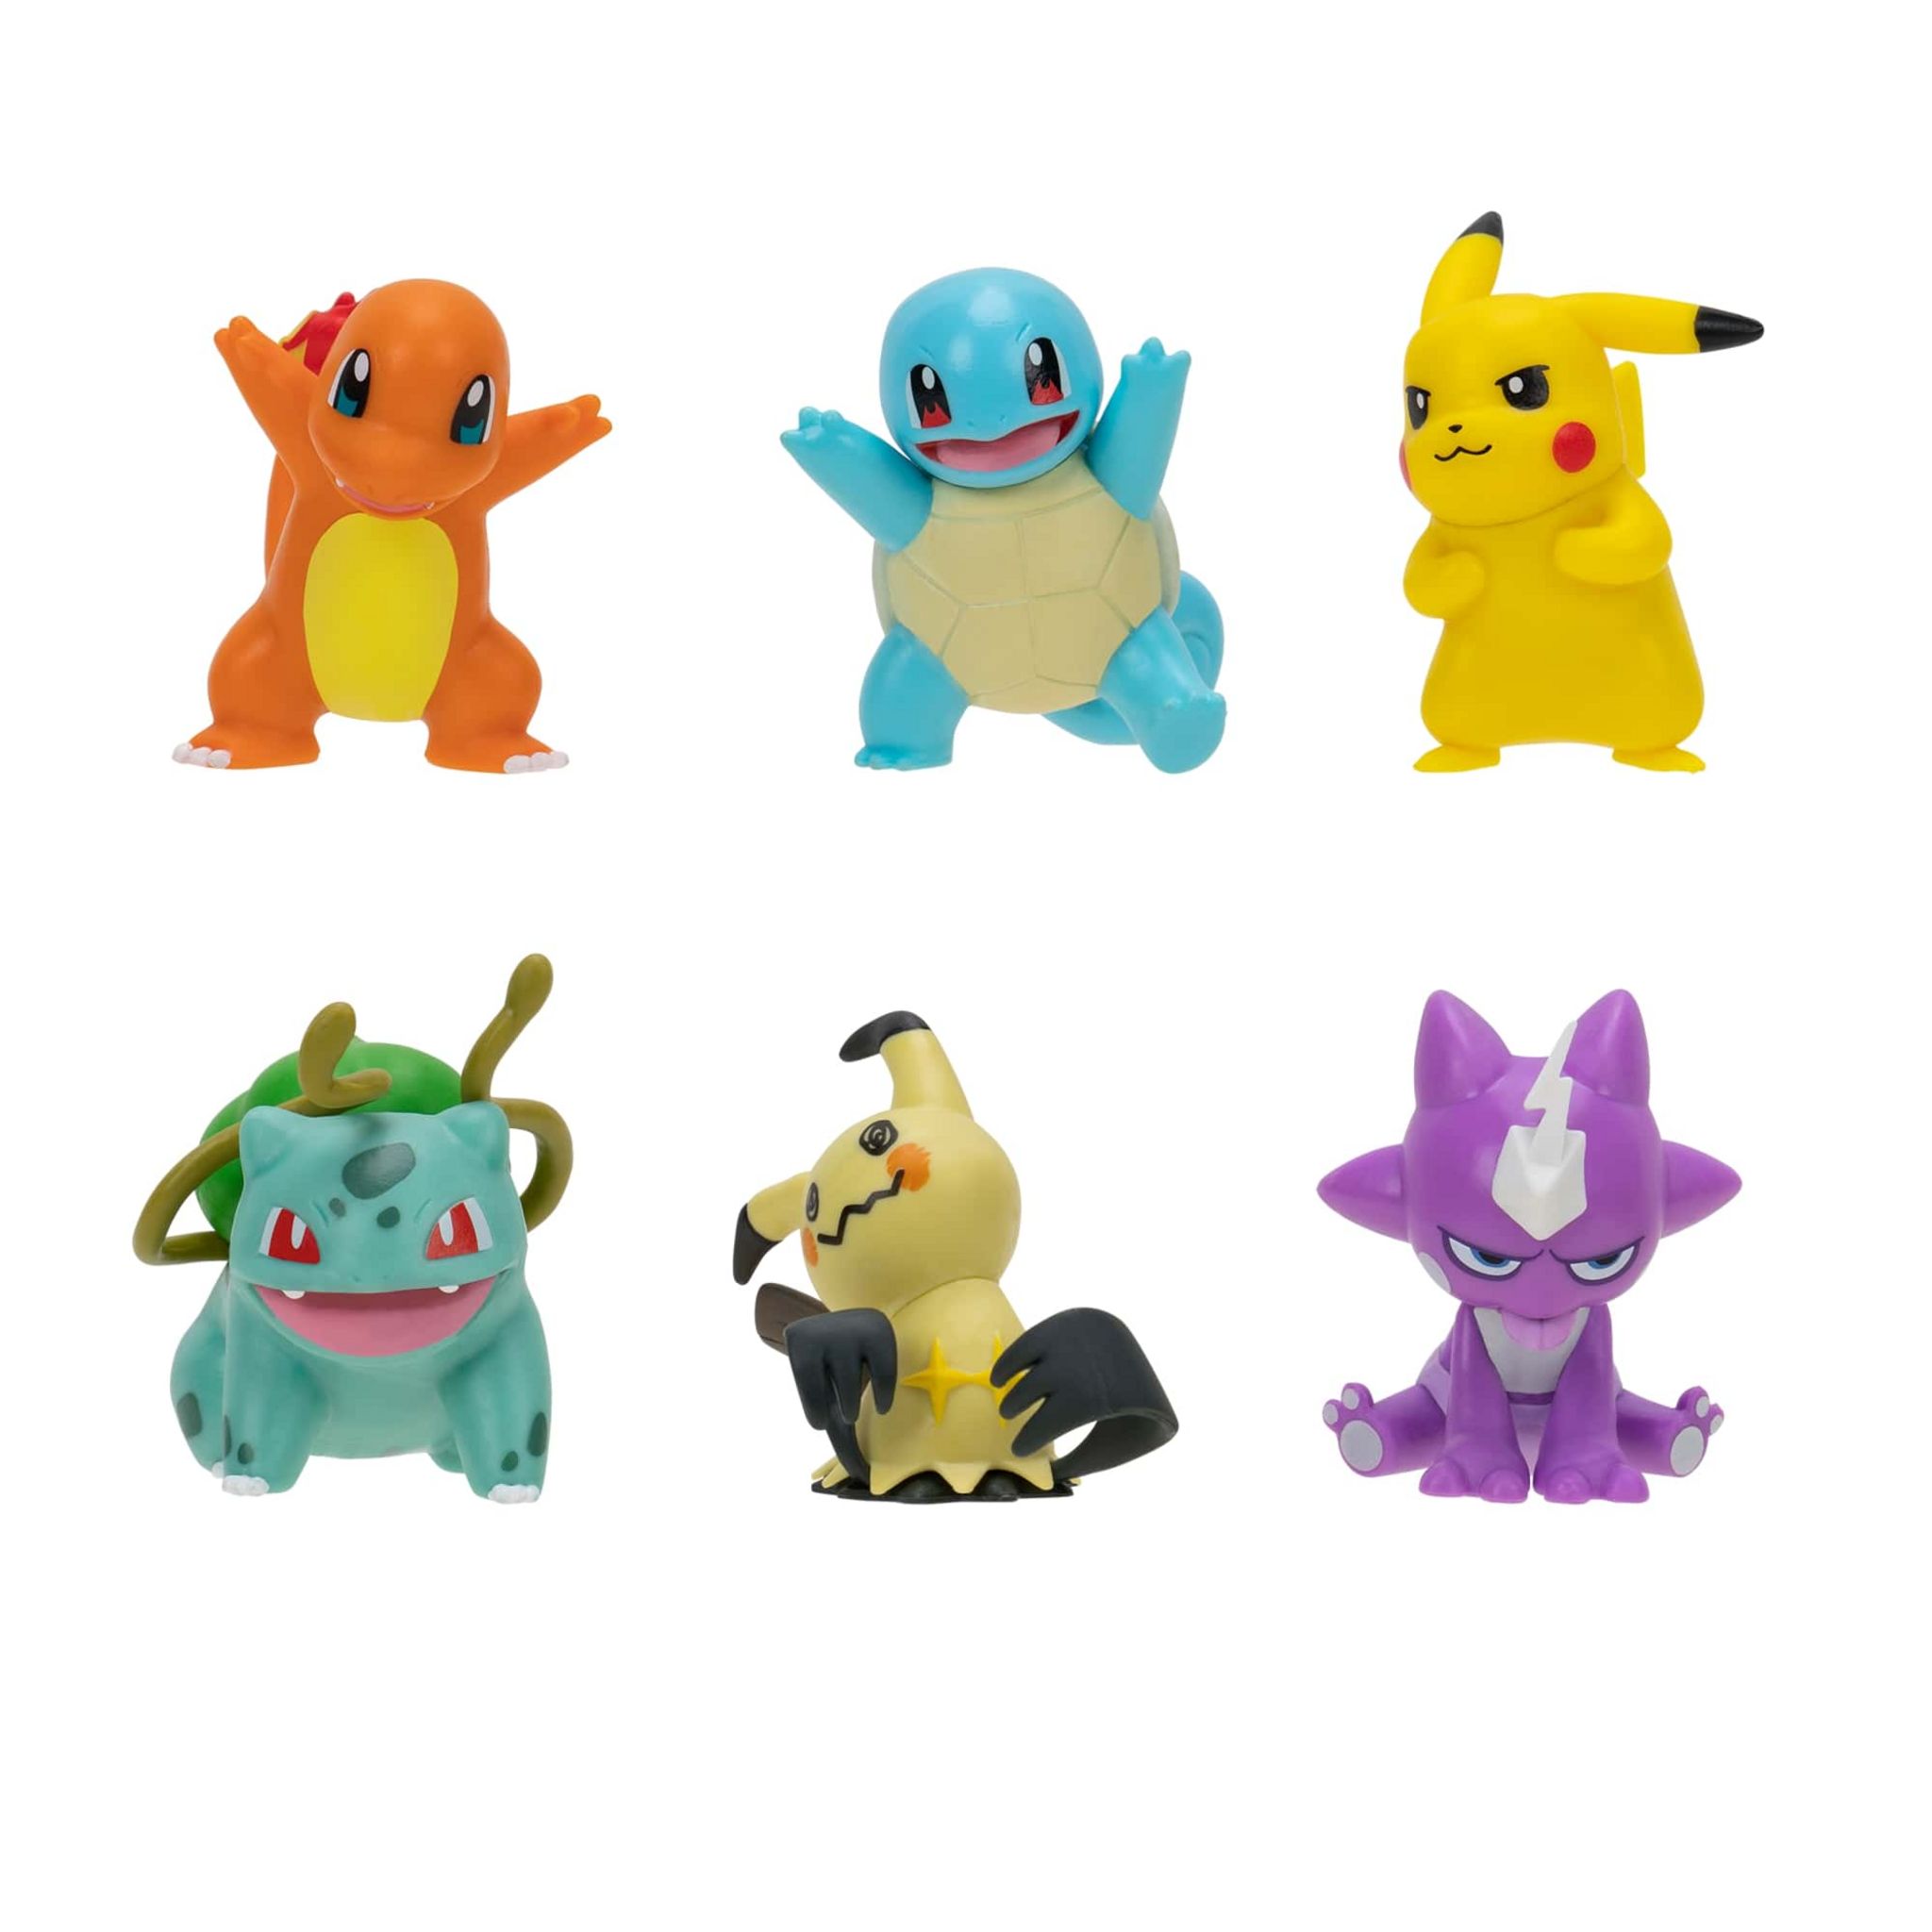 Figurines Pokémon : notre sélection des meilleurs personnages de